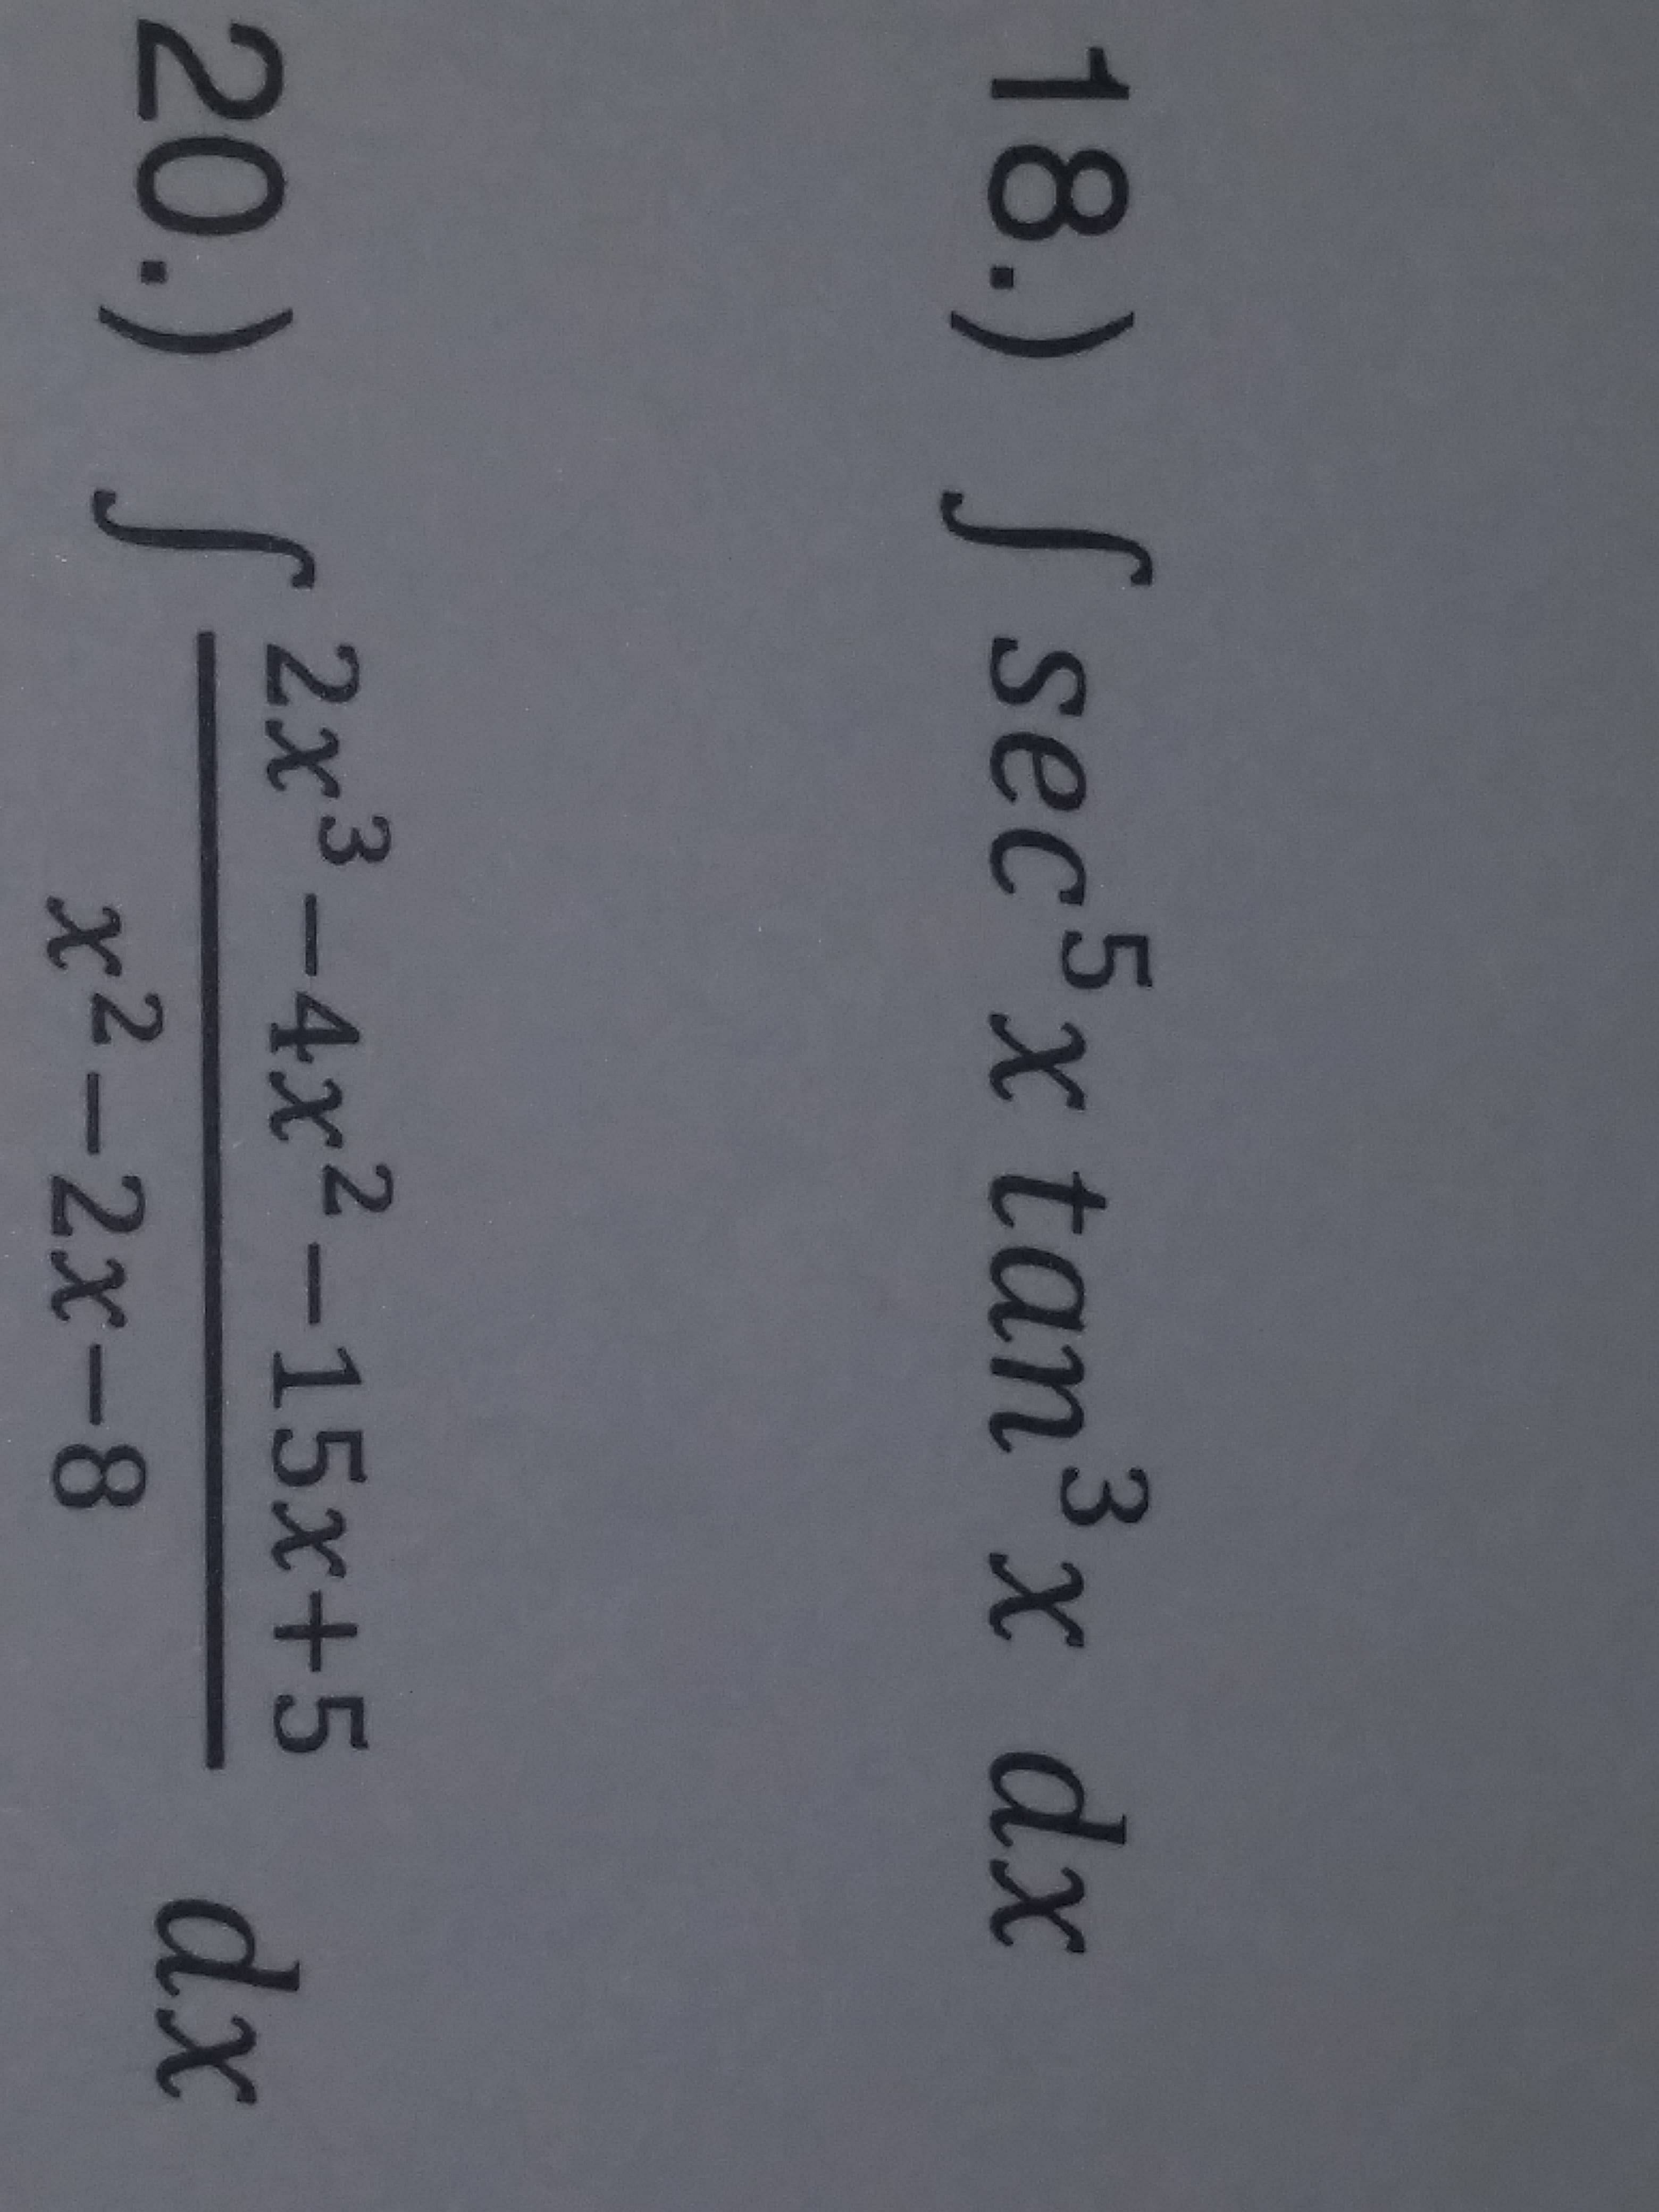 18.) fsec5x tan3x dx
20.)
f 2x3-4x2-15x+5
2
dx
x2-2x-8
